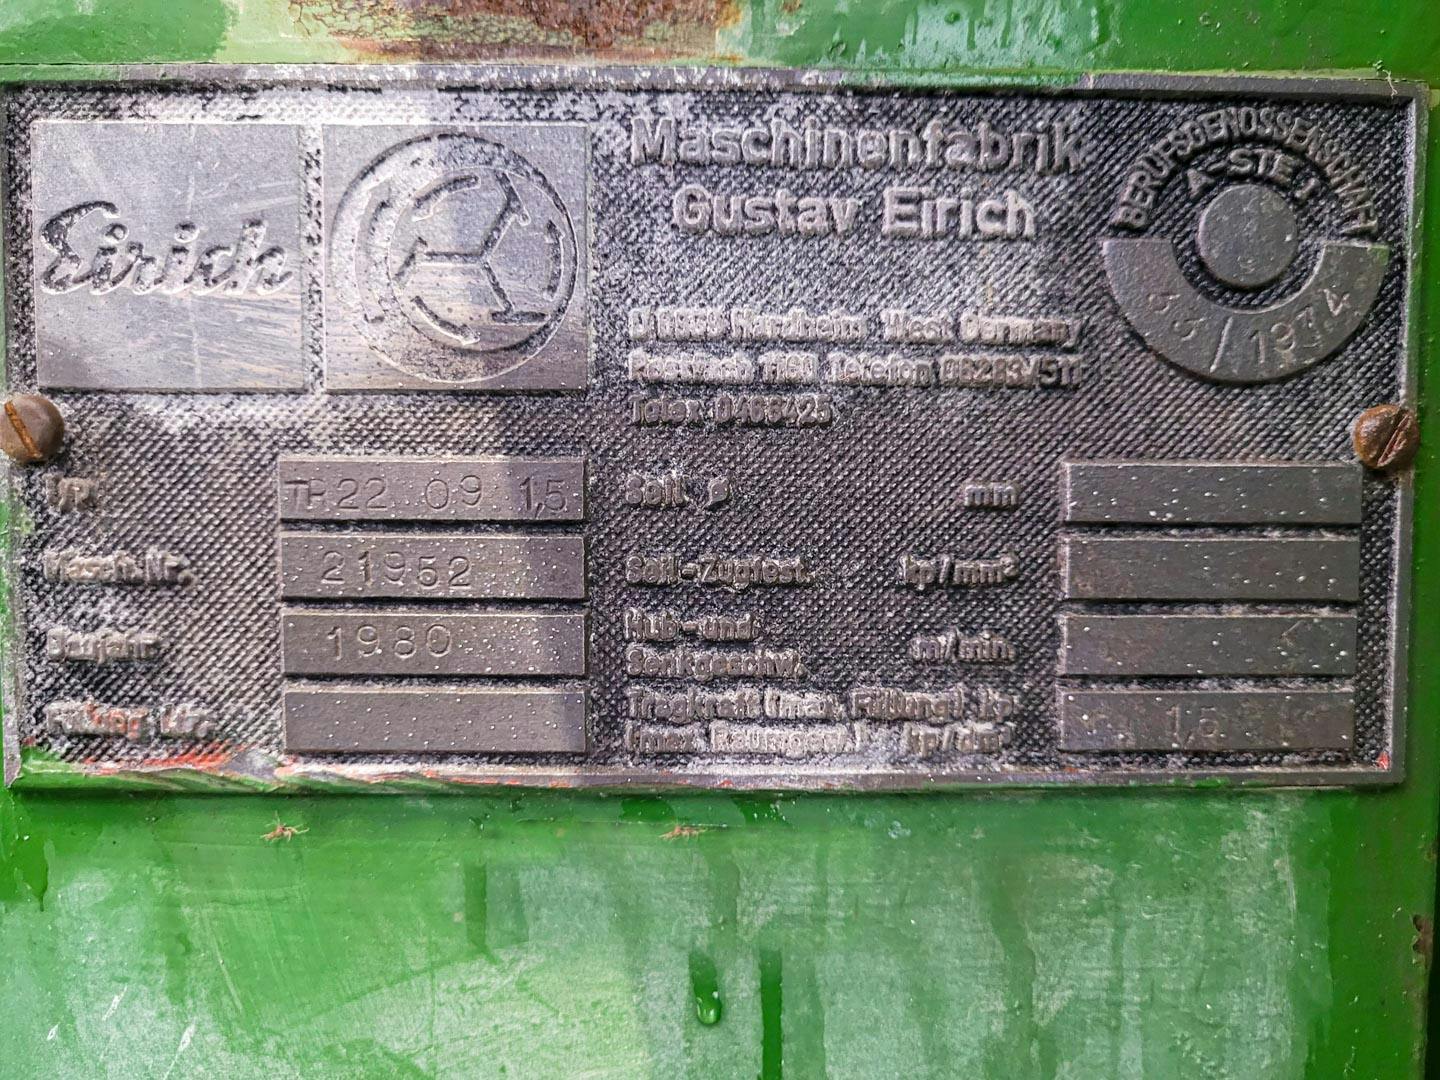 Gustav Eirich TR-22 09 1,5 - Granulierteller - image 14